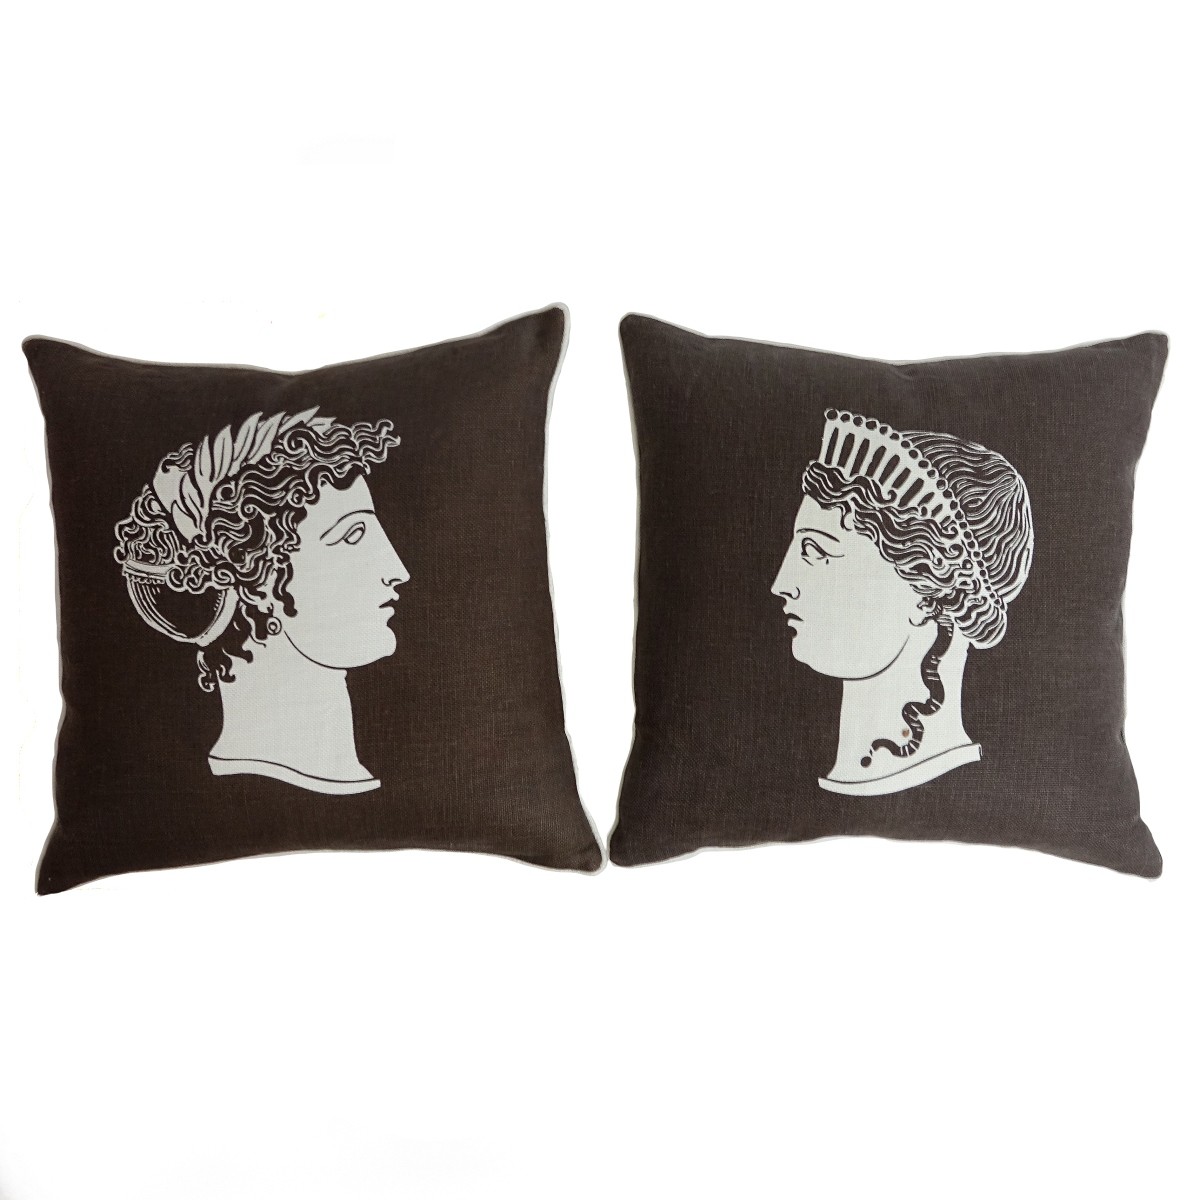 Two Thomas Paul Pillows